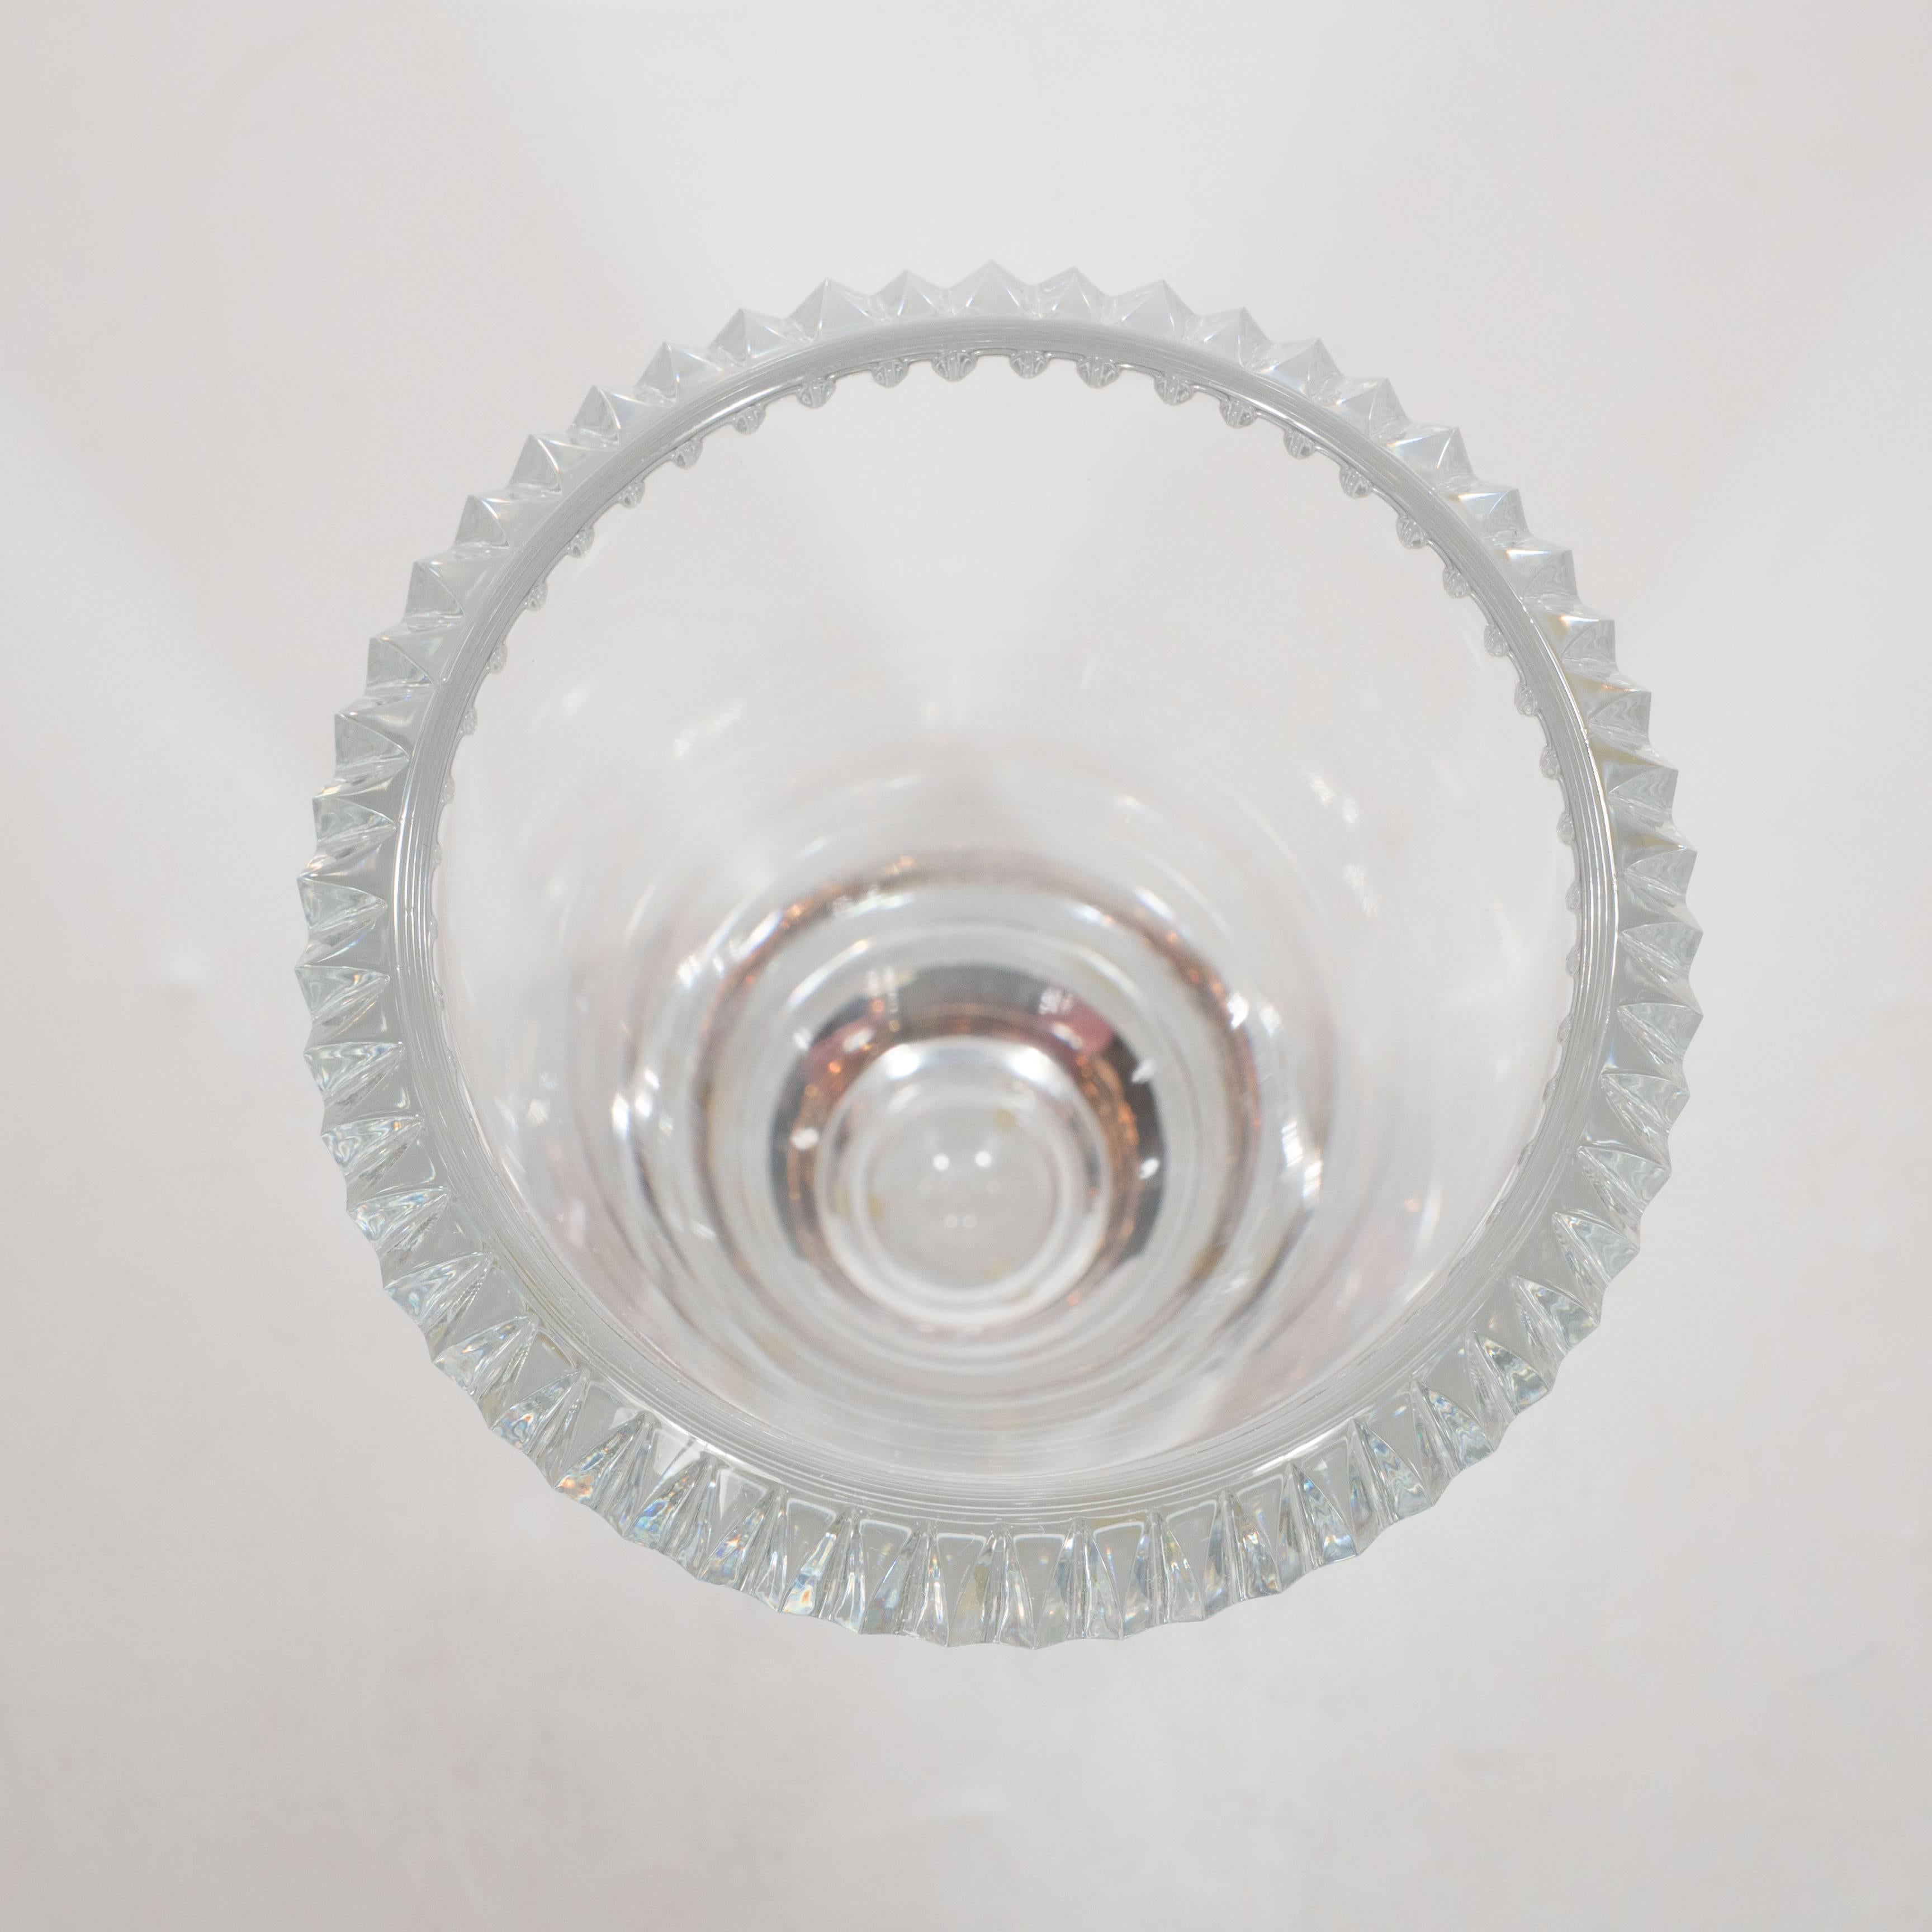 Modernist Cut Crystal Vase by Orrefors 1